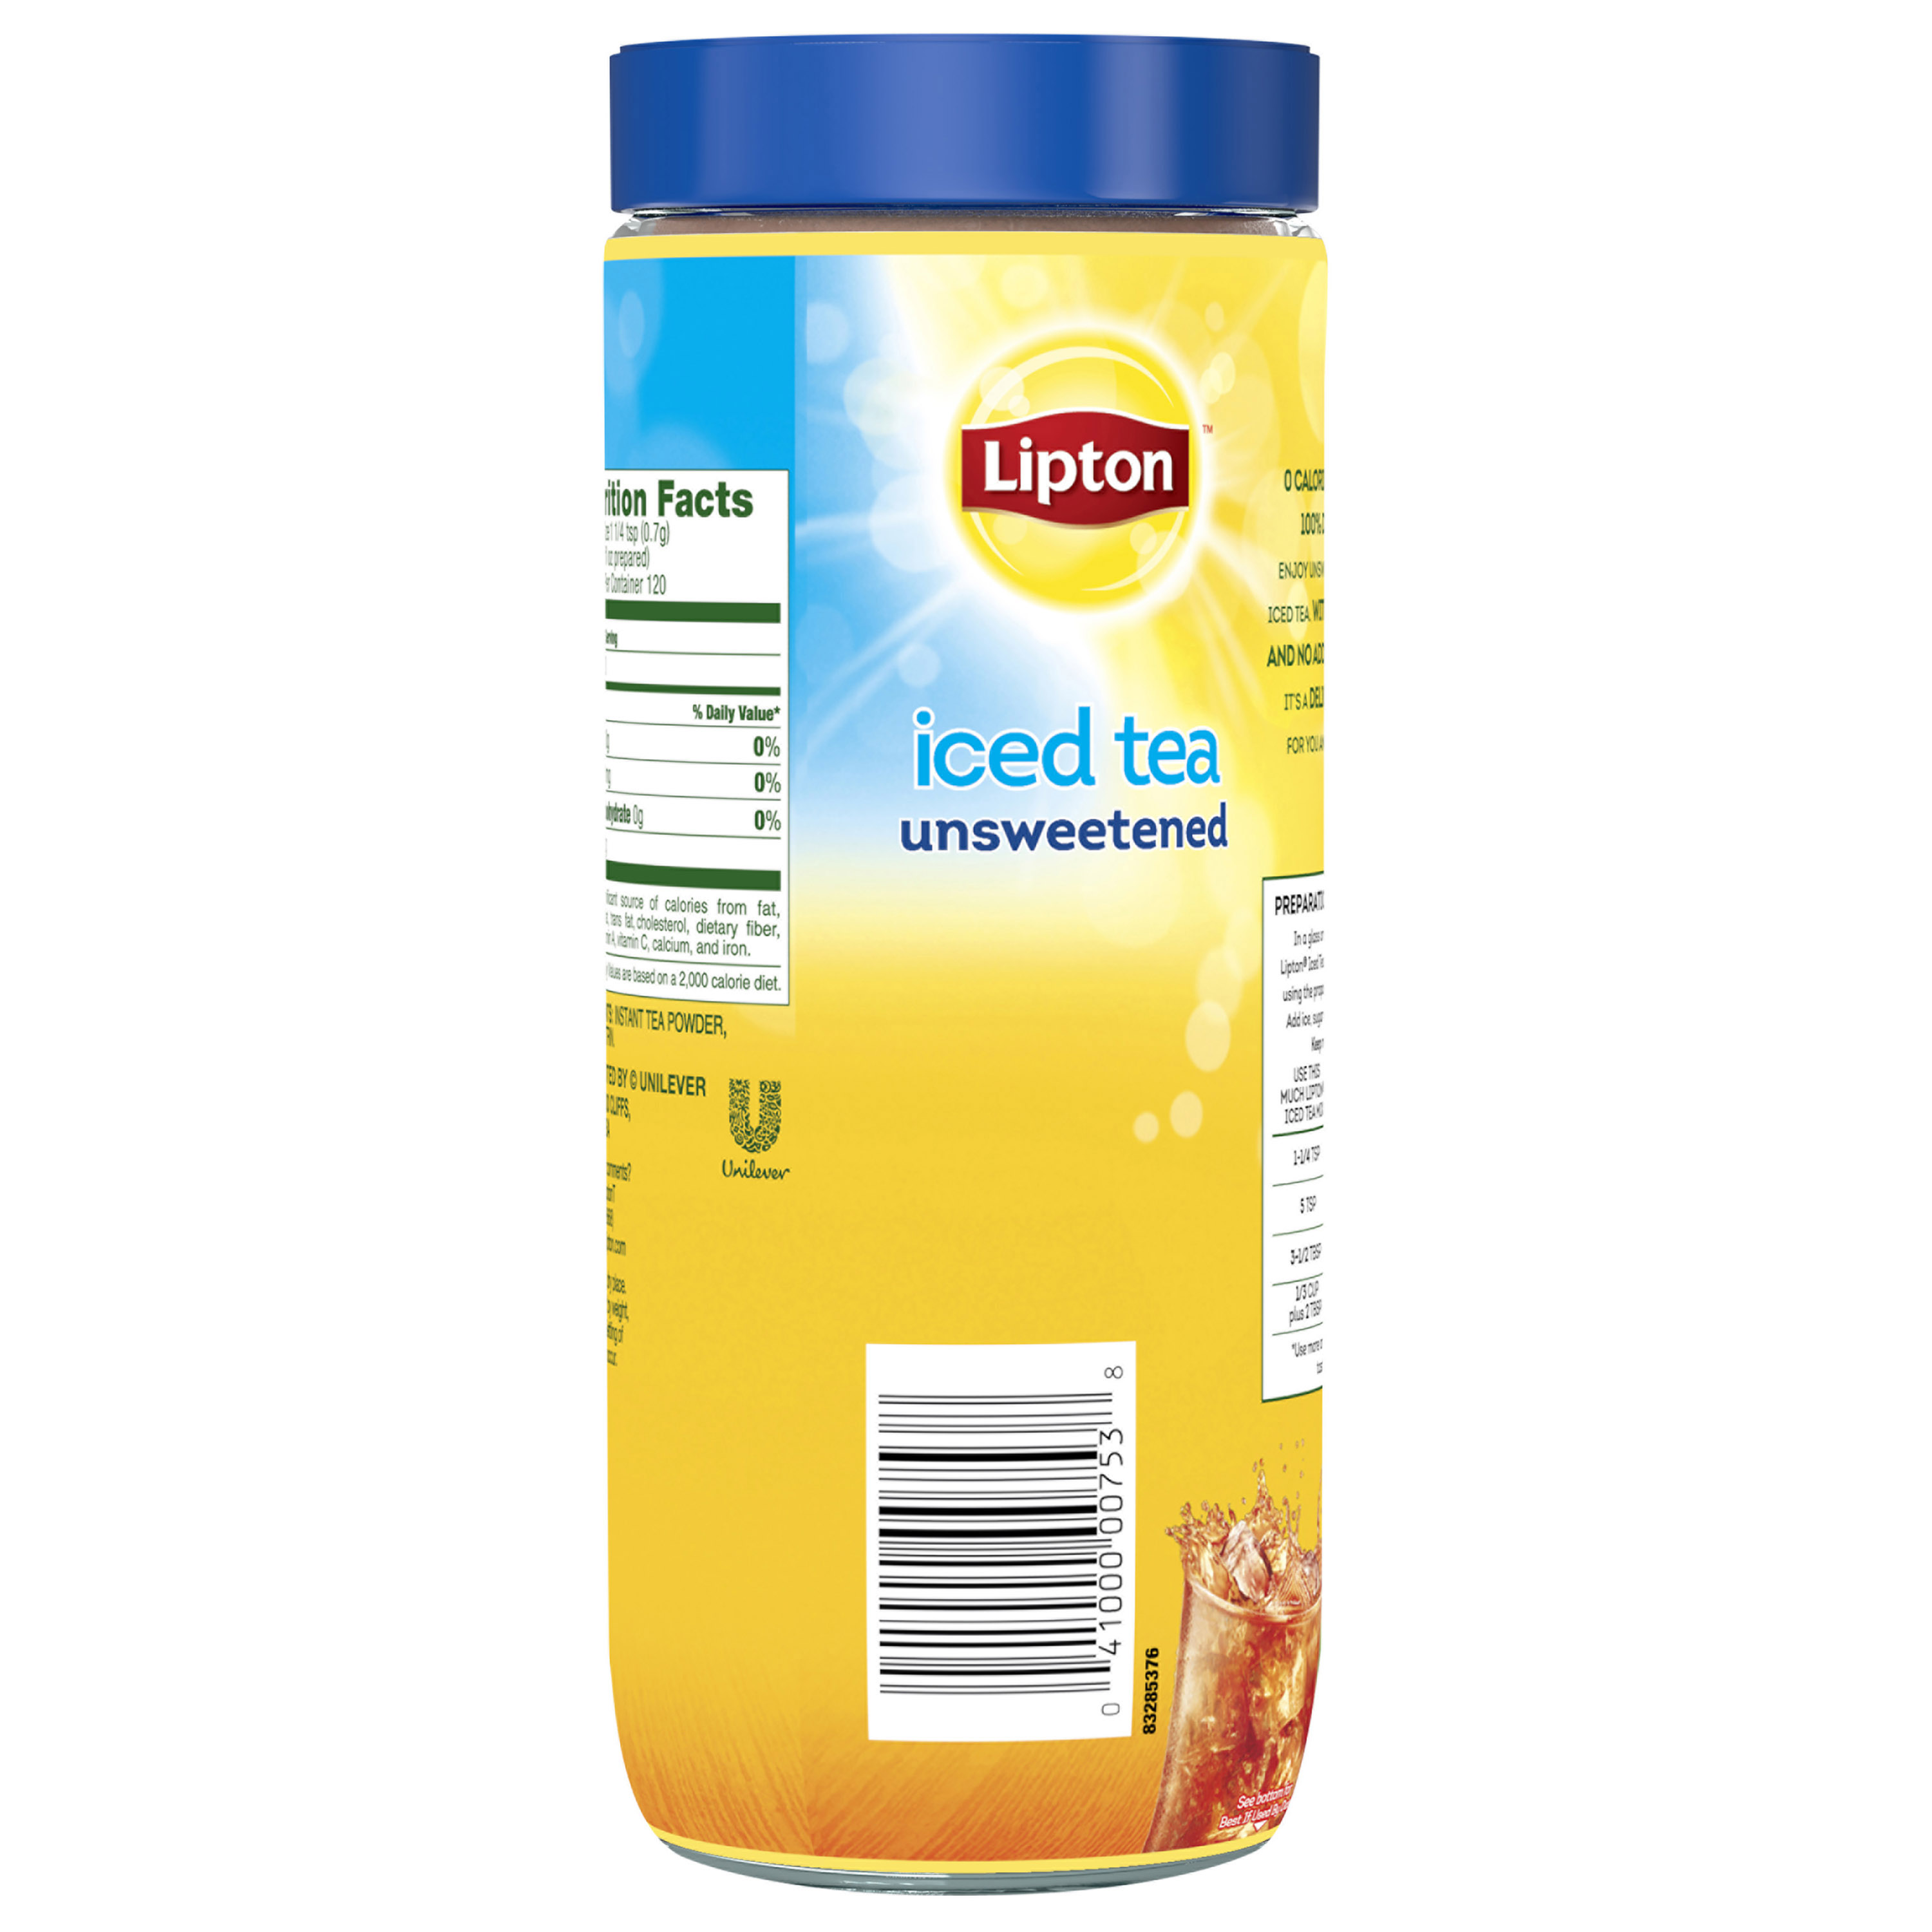 Lipton Iced Tea Mix Black Tea, Caffeinated, Makes 30 Quarts, 3 oz Can - image 5 of 8